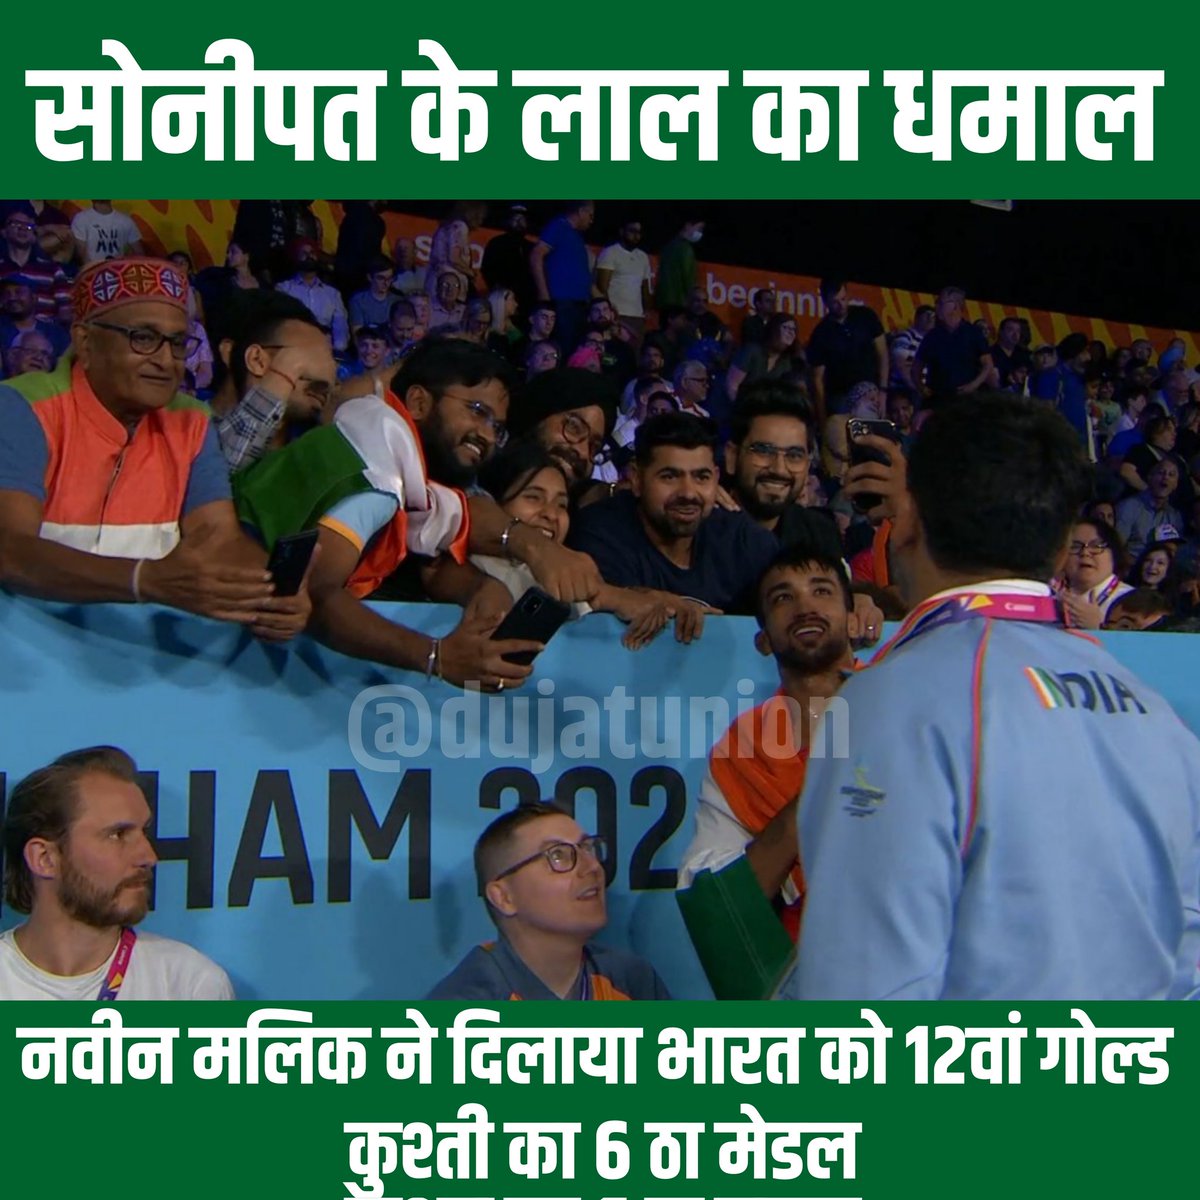 #Birmingham22 में भारत को मिला 12th गोल्ड मैडल। #Haryana के नवीन मलिक ने जीता #CommonwealthGames  में गोल्ड। 74 किलोग्राम भार वर्ग में #pakistan के ताहिर को एकतरफा मुकाबले में हराया।
#naveen  #Wrestling 
#CWG2022India #CWG2022